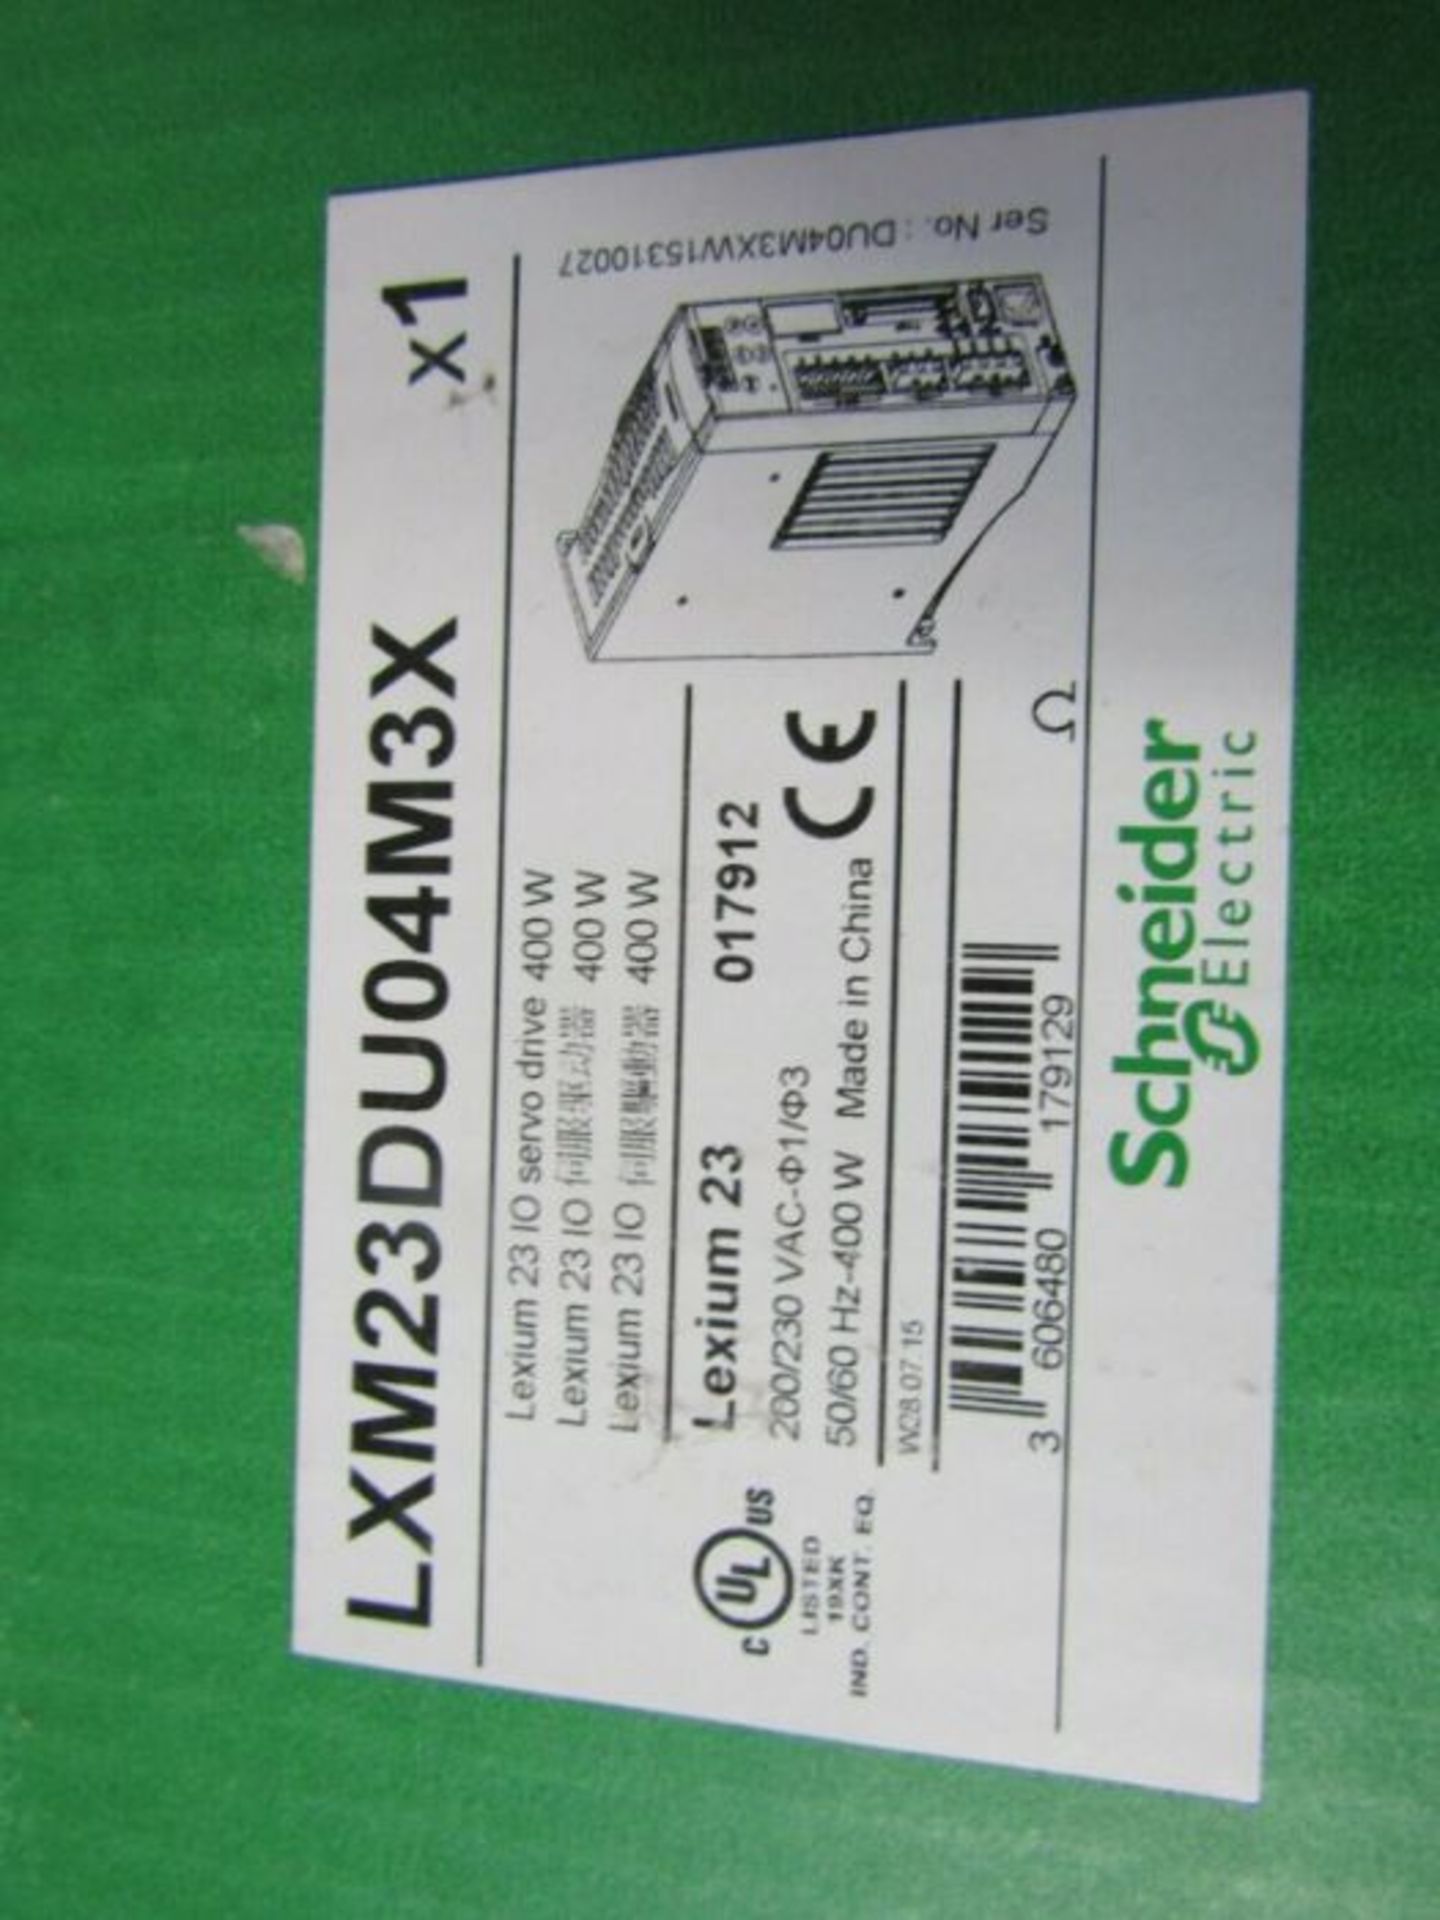 Schneider Lexium 23 0.4 kW Encoder Feedback Servo Drive 2.6A 220V Bigp 7701397 - Image 2 of 2